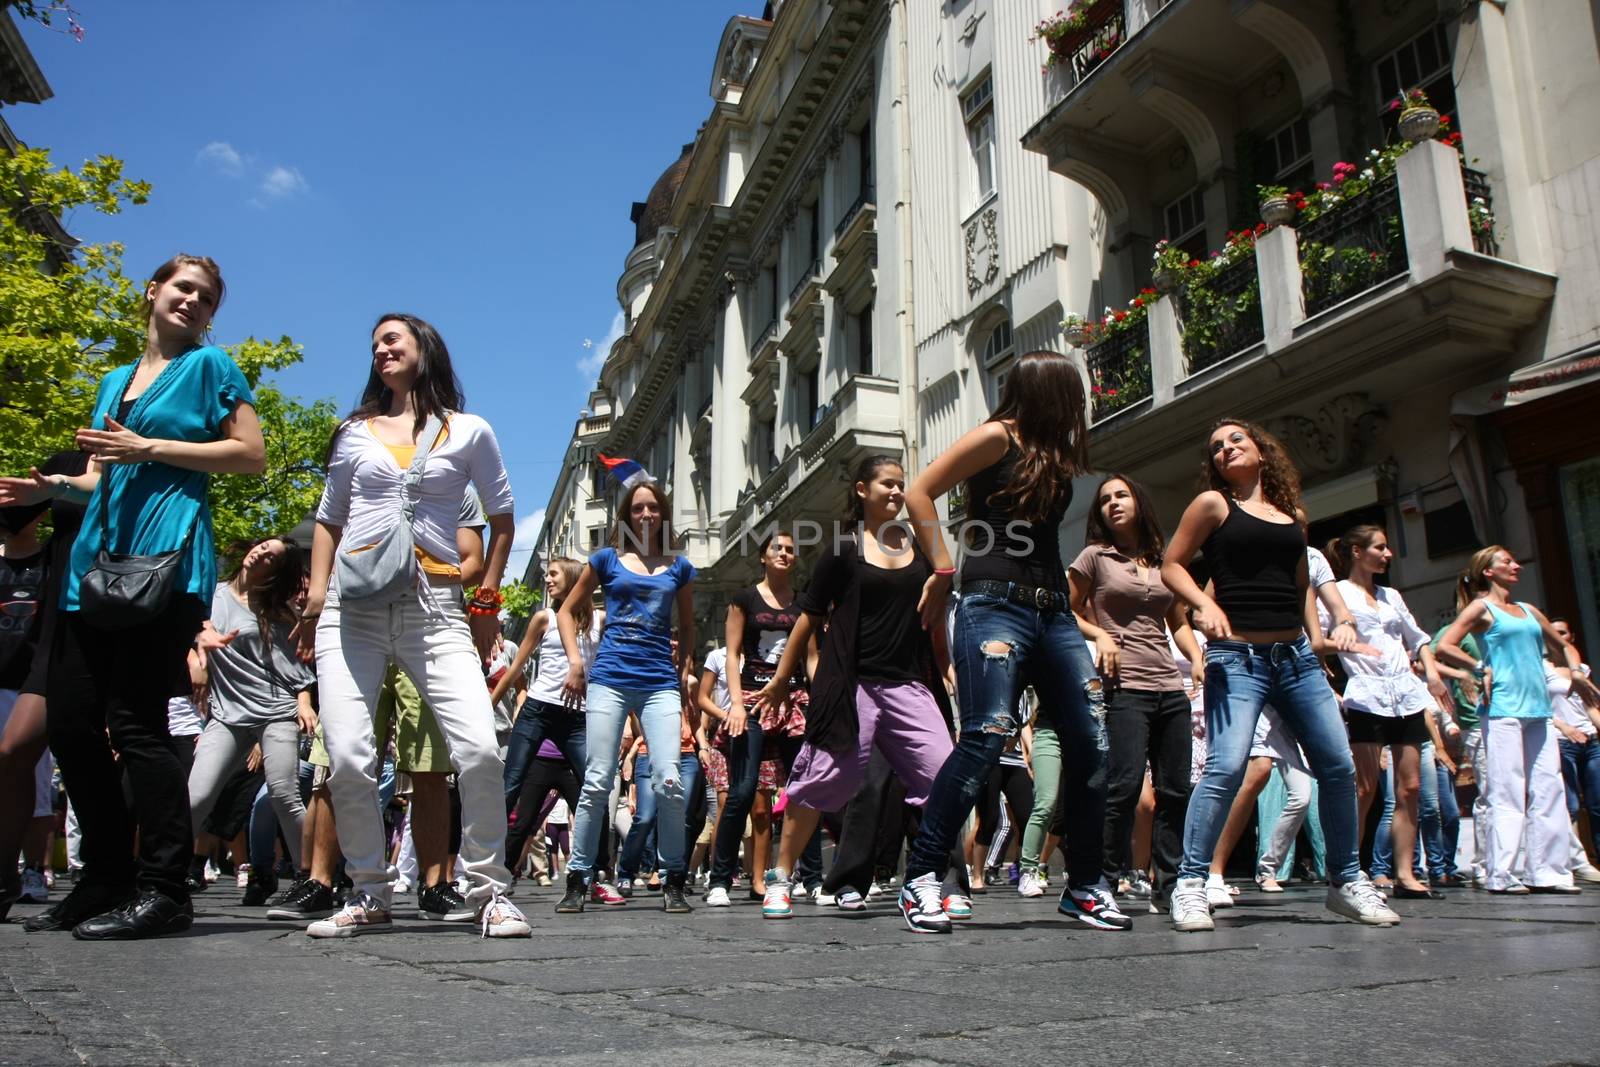 Dance in Belgrade by tdjoric